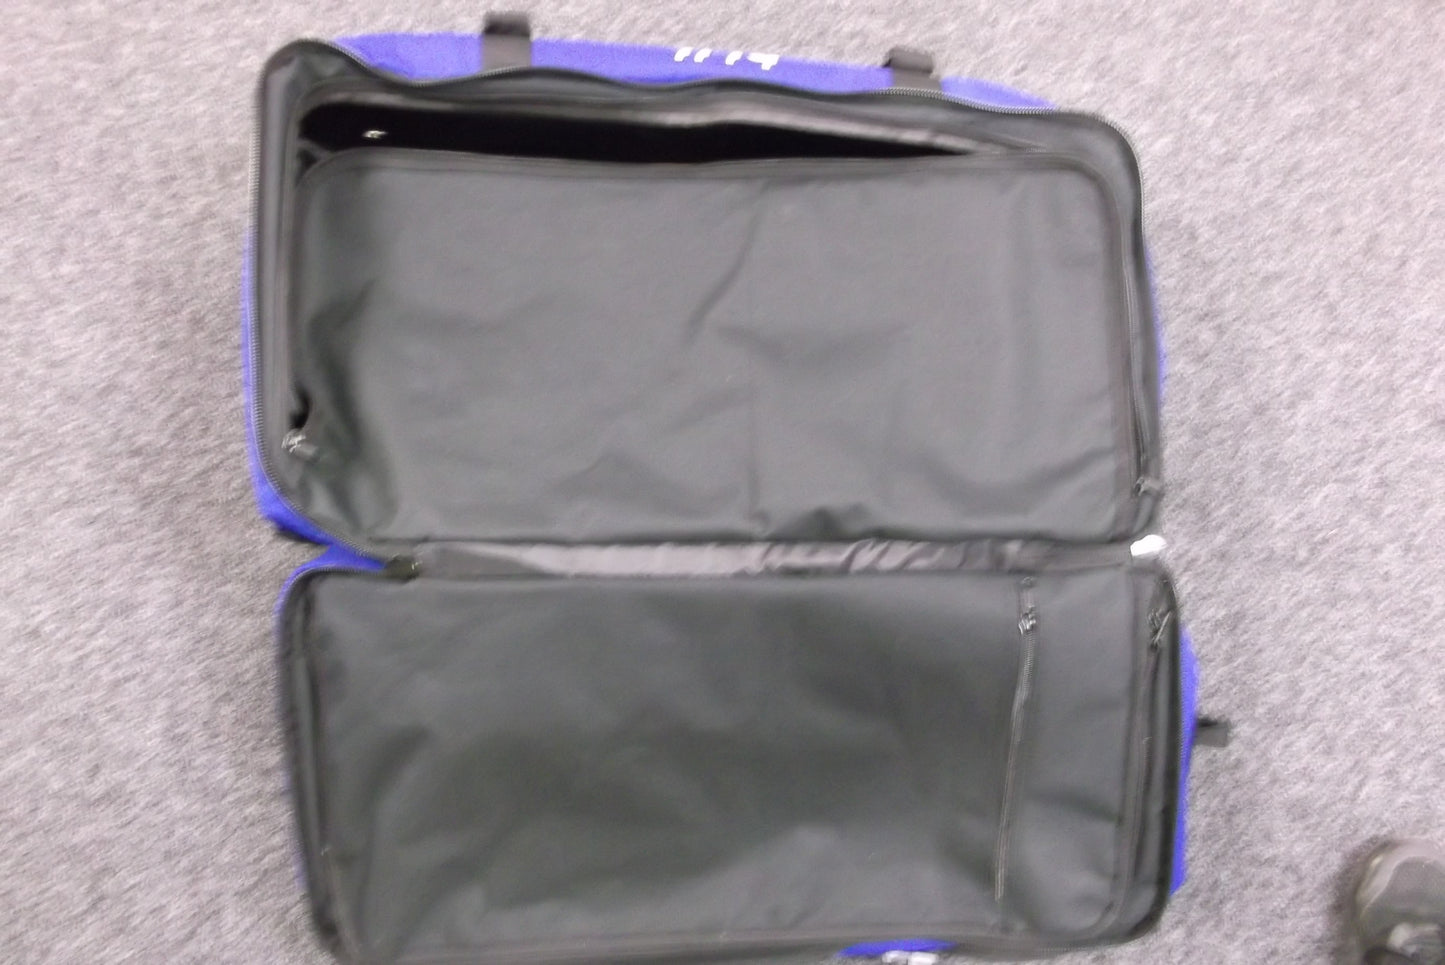 Yamaha bLU cRU Gear Luggage Bag